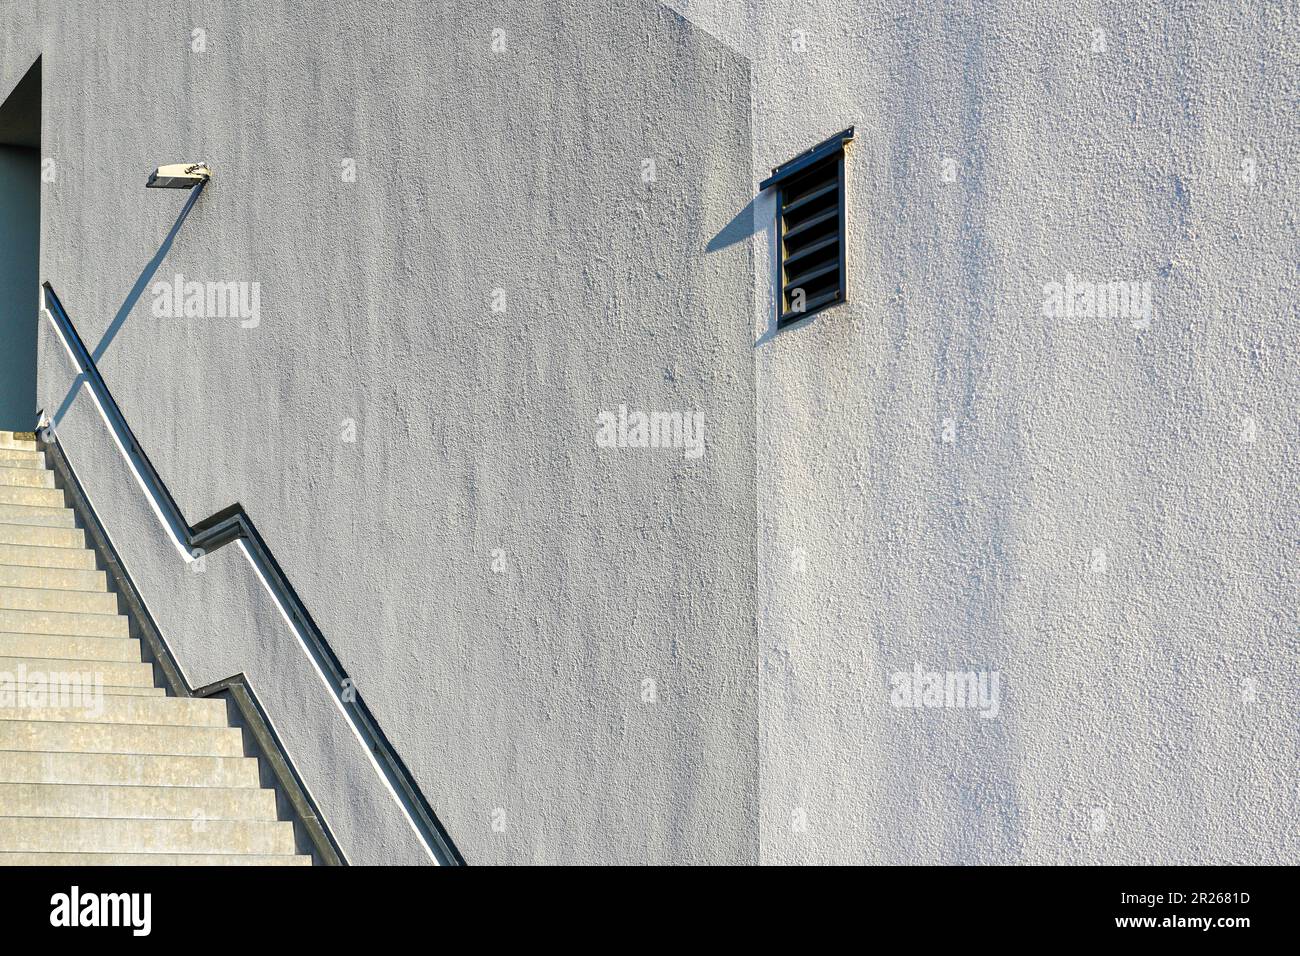 Una grande parete bianca sulla sinistra una scala metallica che conduce ad una porta alla luce del sole. Foto Stock